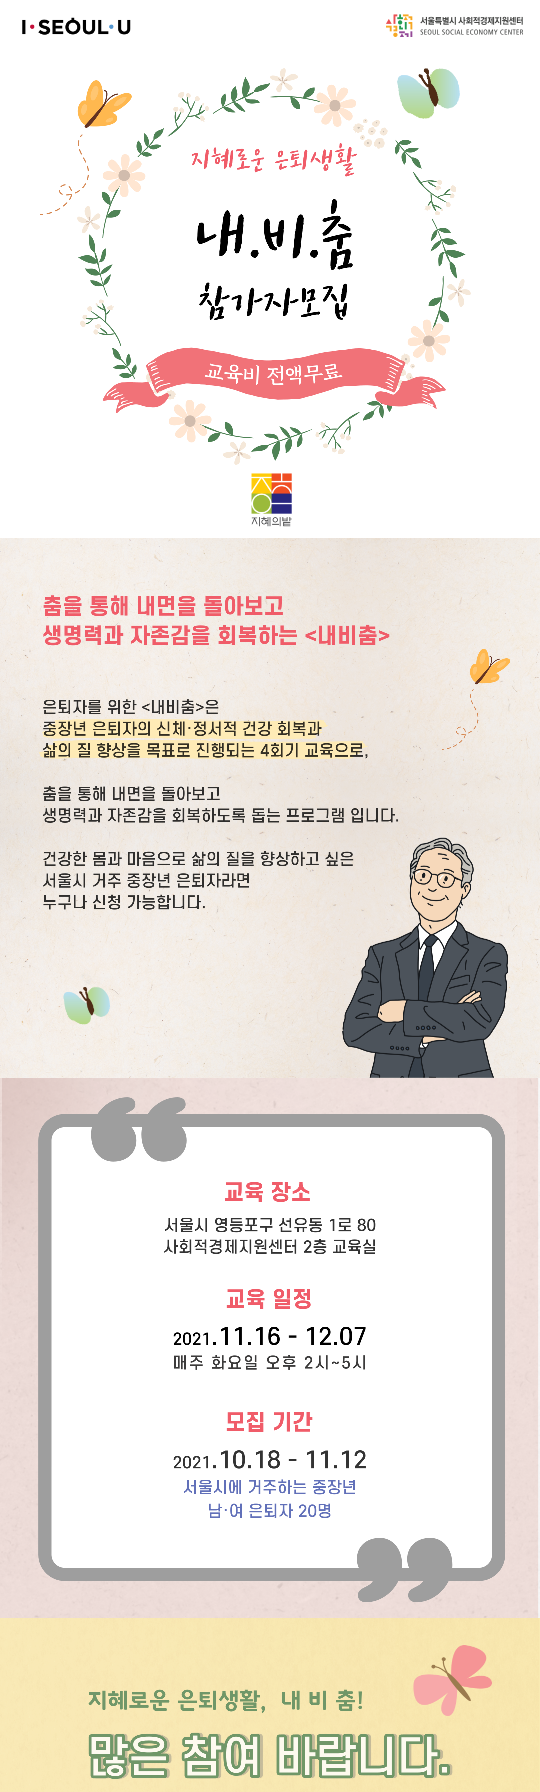 내비춤-시민액션플랜_업로드용.png